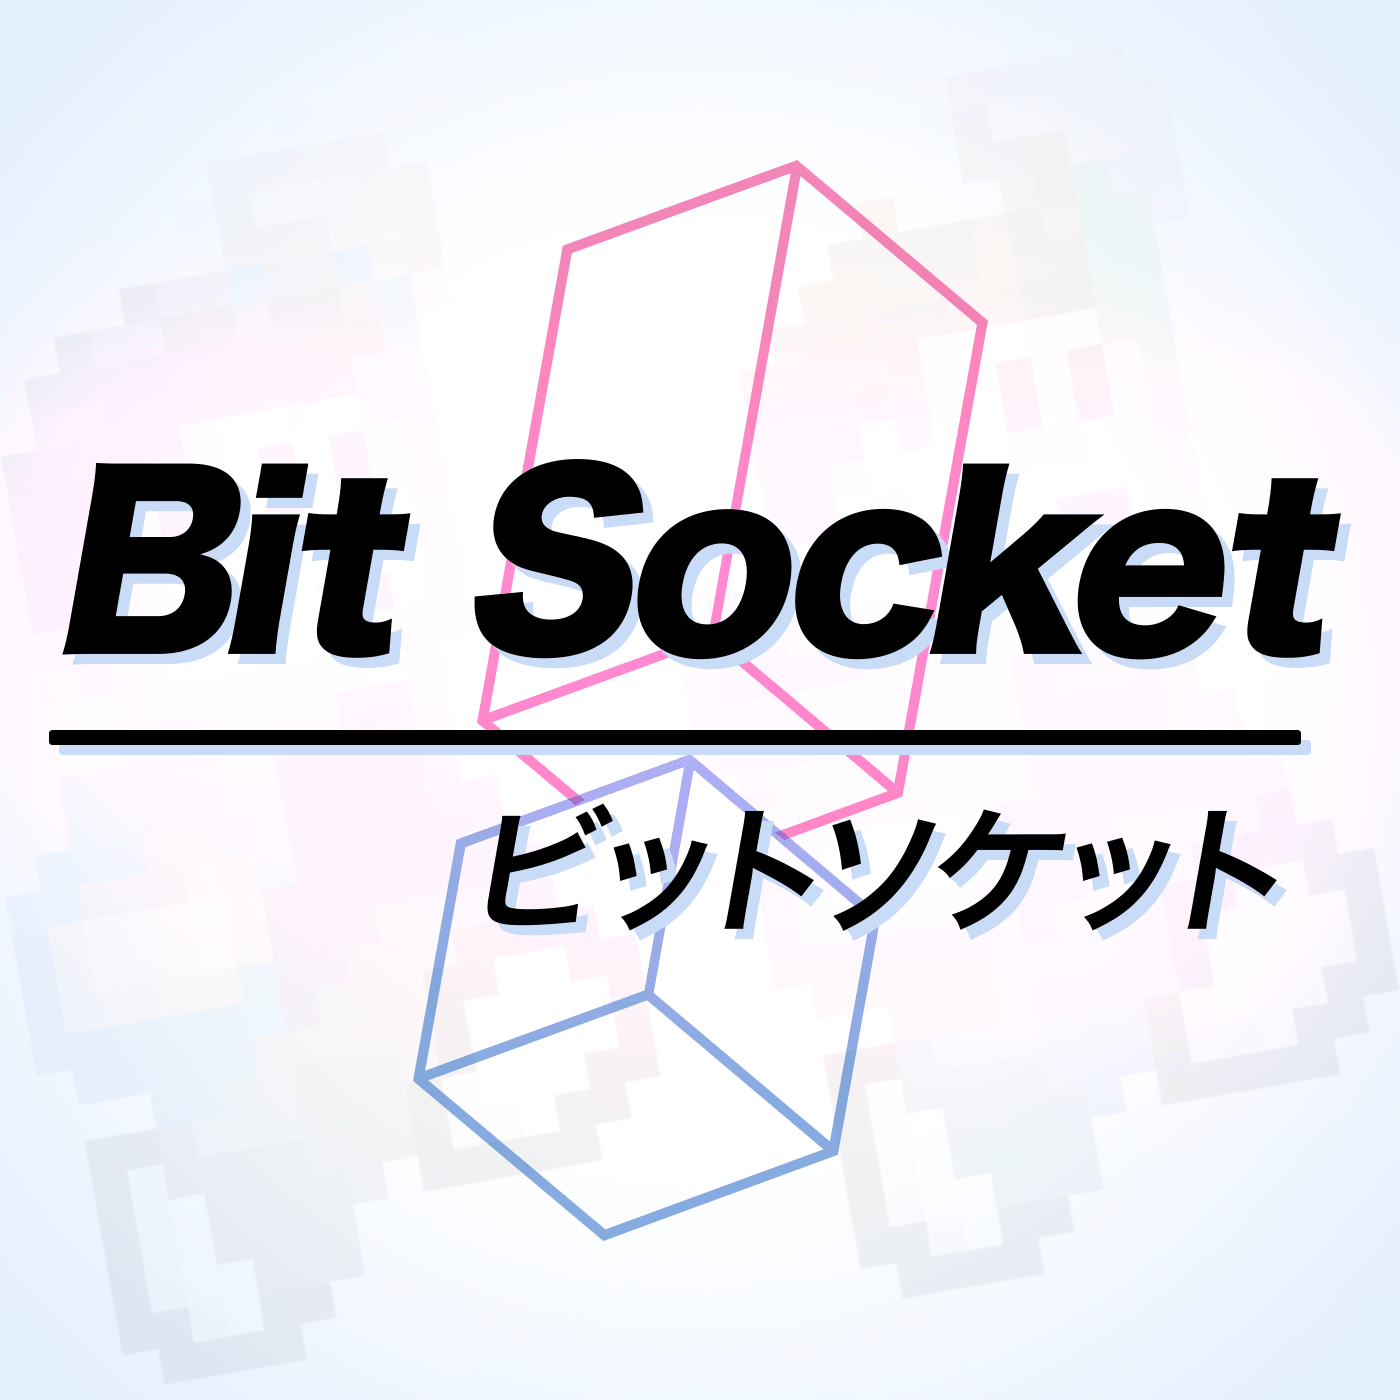 Episode 91: Happy Birthday, Mr Bit Socket